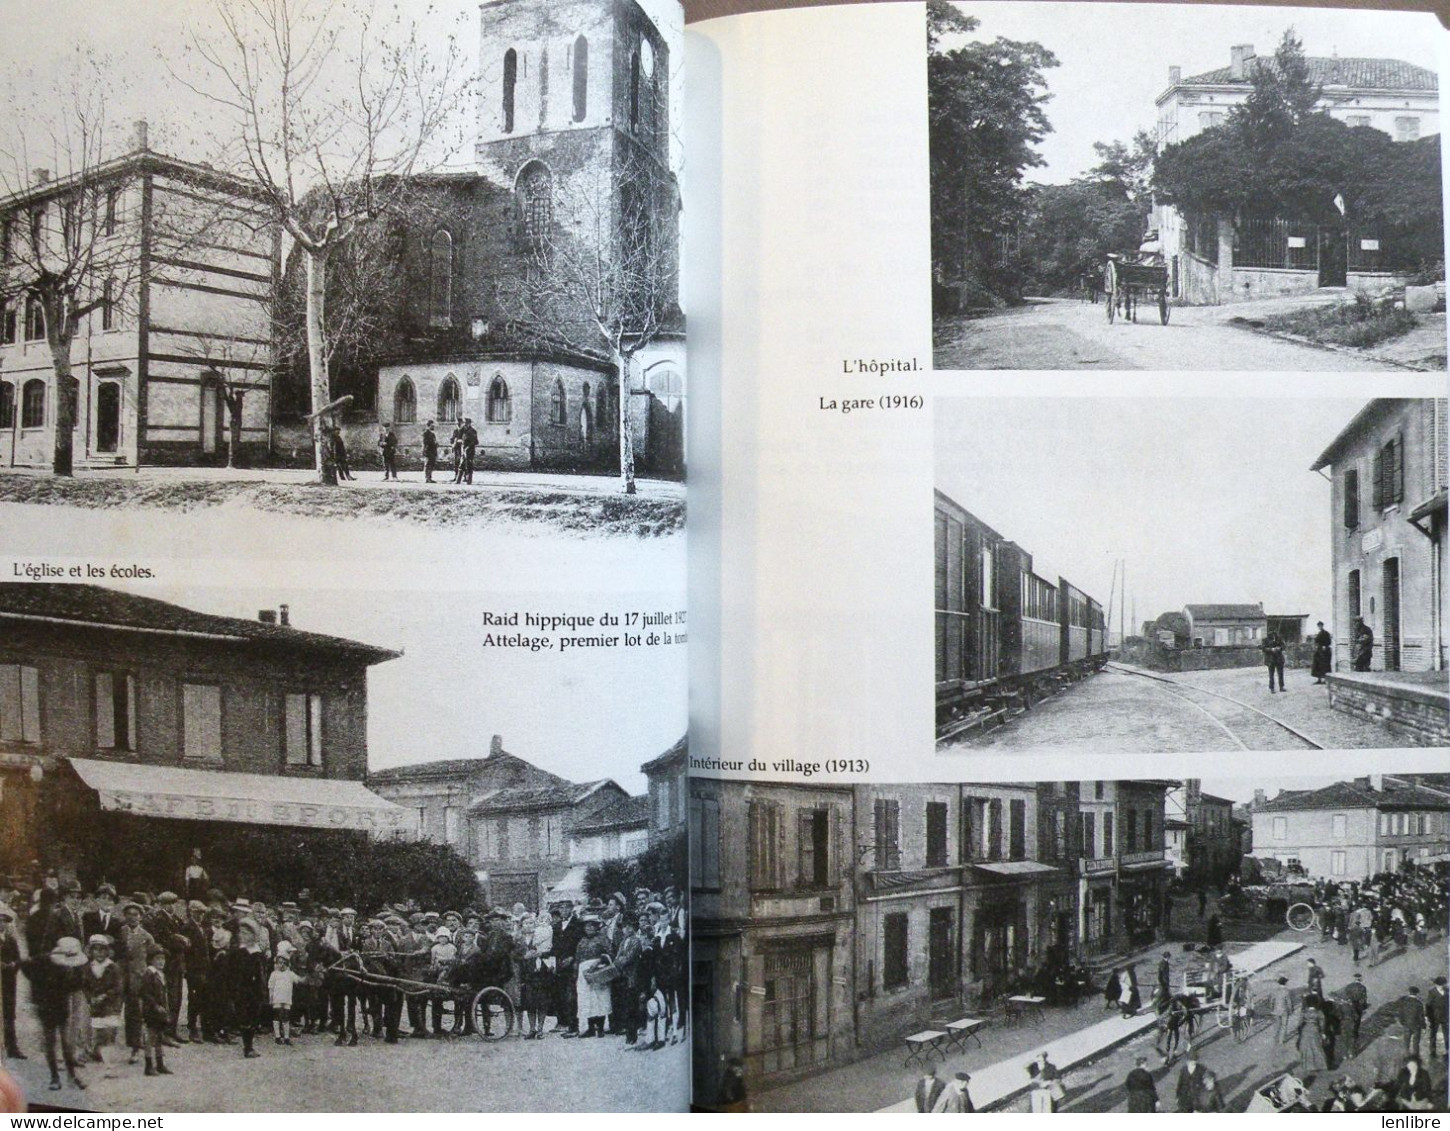 HISTOIRE De FRONTON Et Du FRONTONNAIS. A. Escudier. Imp. Sud-Toulouse. 1992. - Midi-Pyrénées